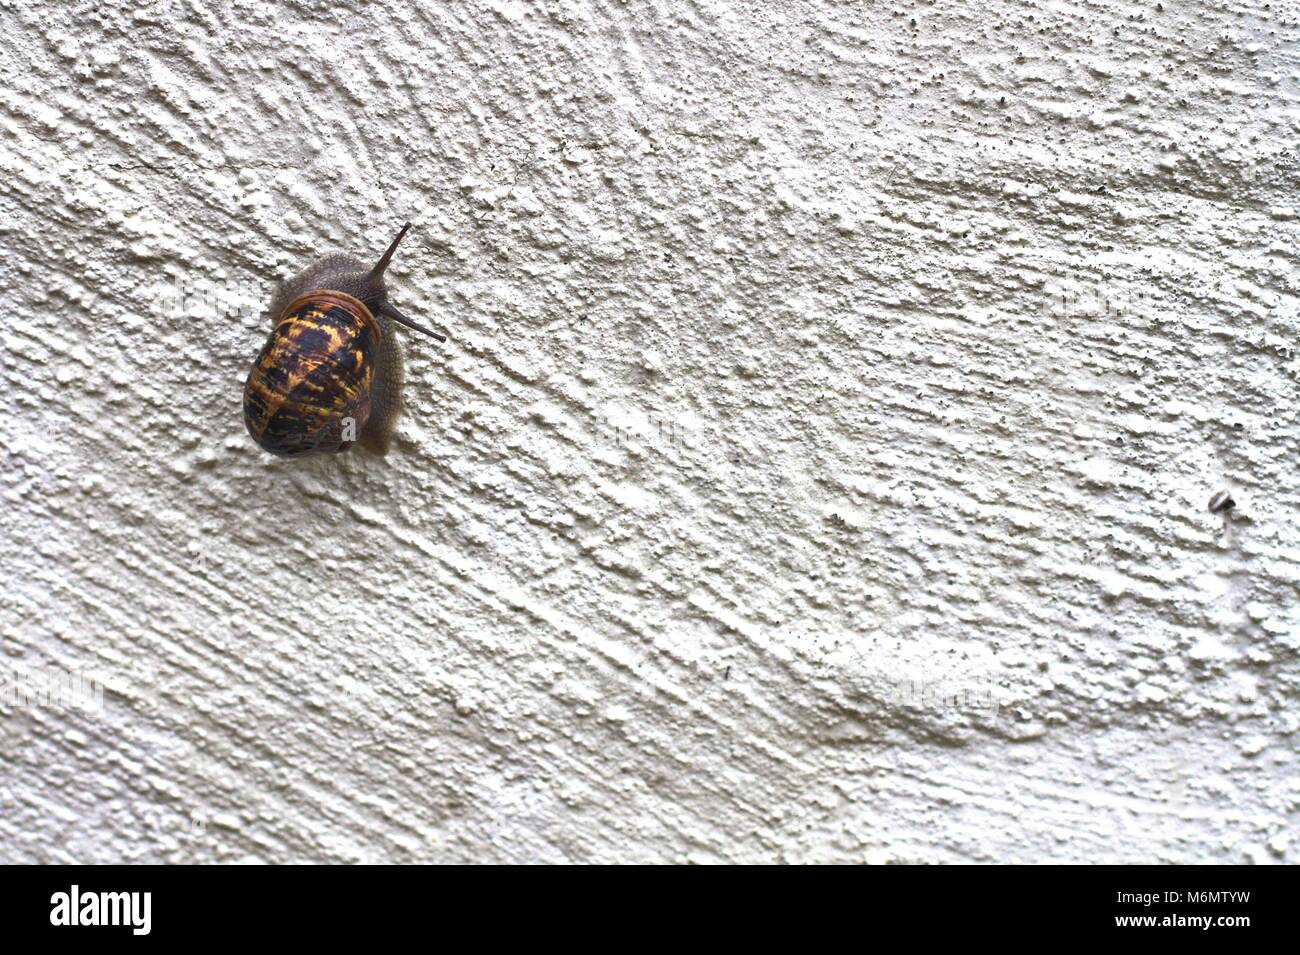 Garden snail climbing up rough white wall. Stock Photo